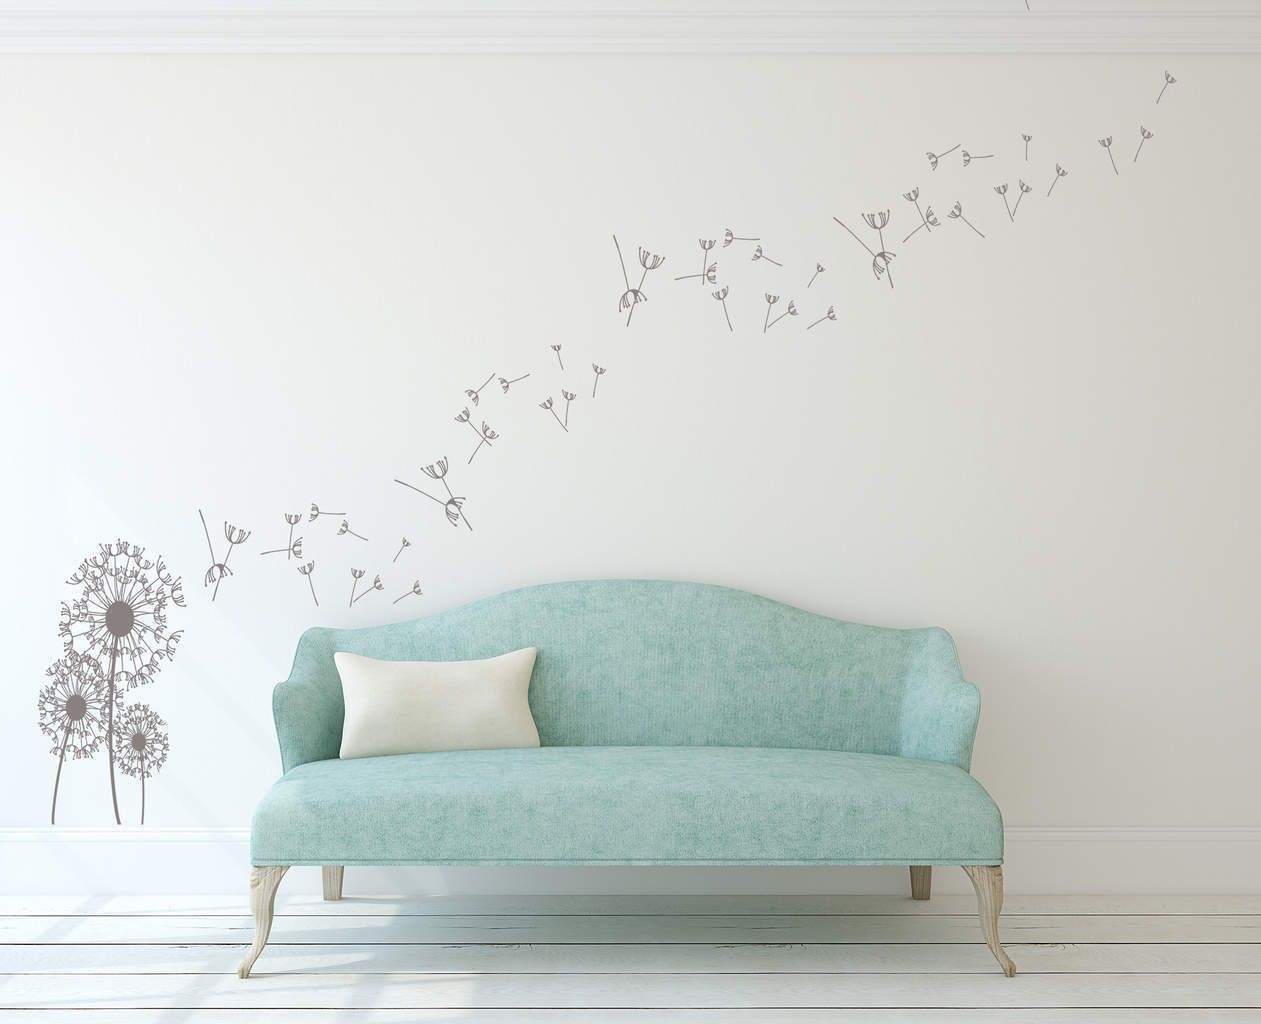 Dandelion Wall Art Decal | Dandelion Wall Decal Sticker In Flying Dandelion Wall Art (View 14 of 15)